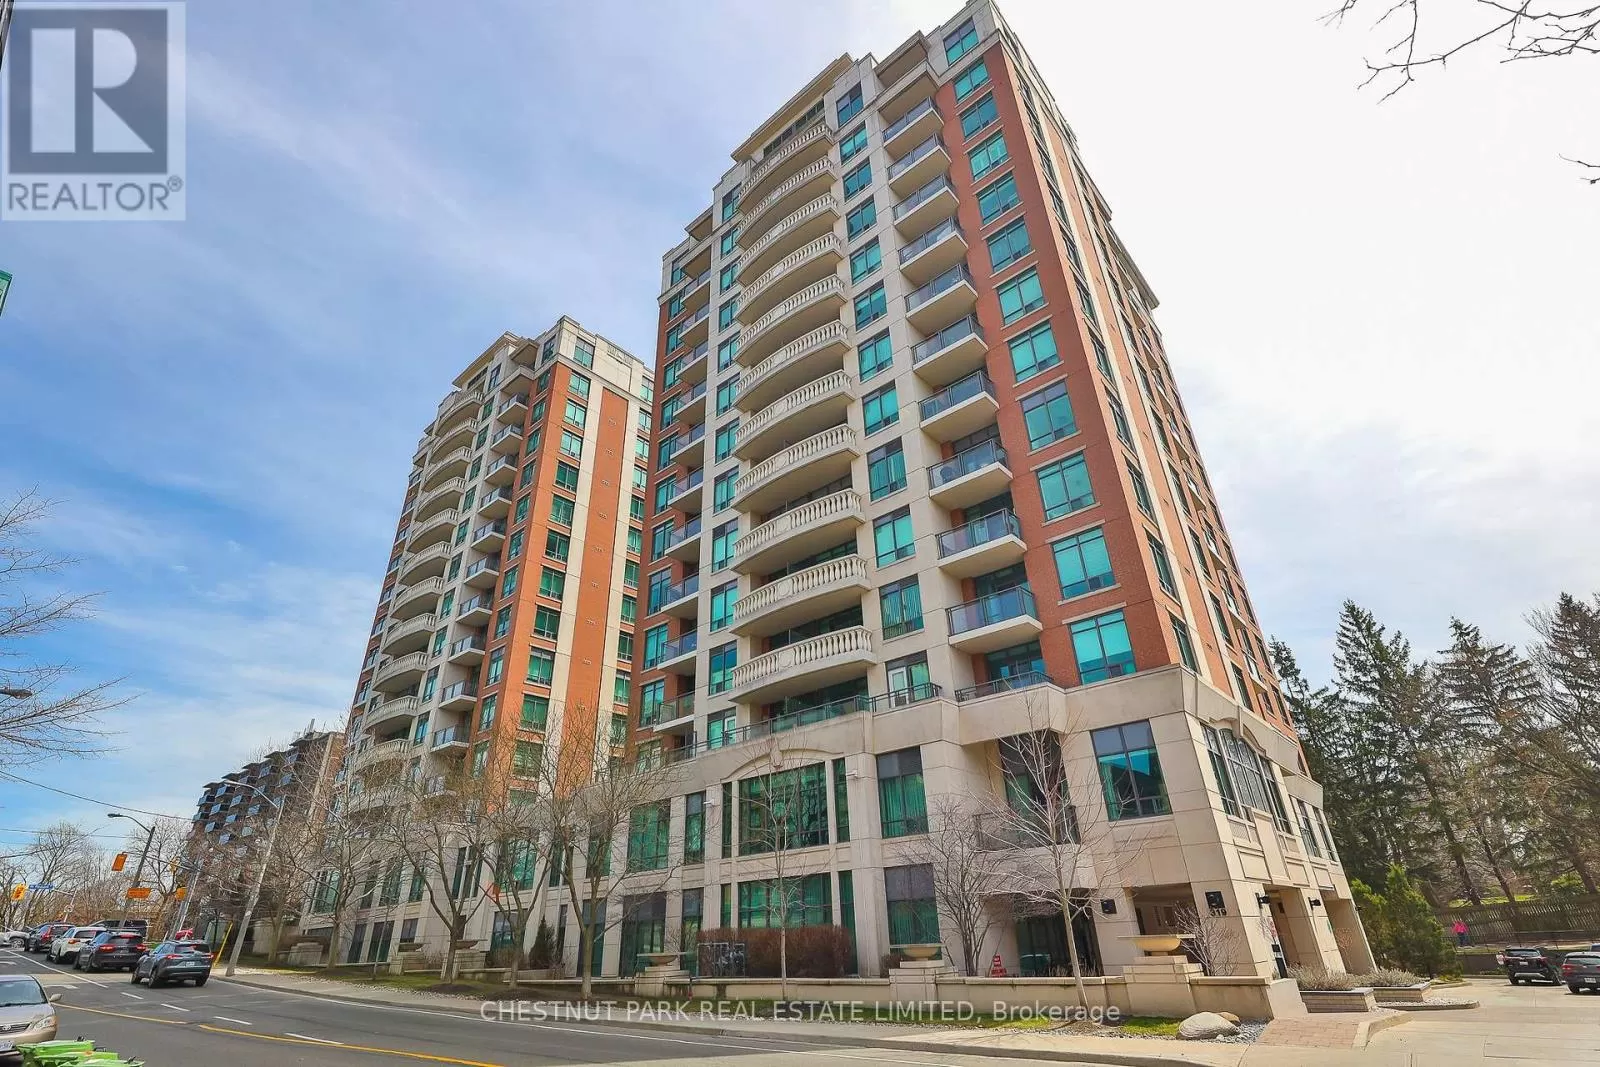 Apartment for rent: 514 - 319 Merton Street, Toronto, Ontario M4S 1A5